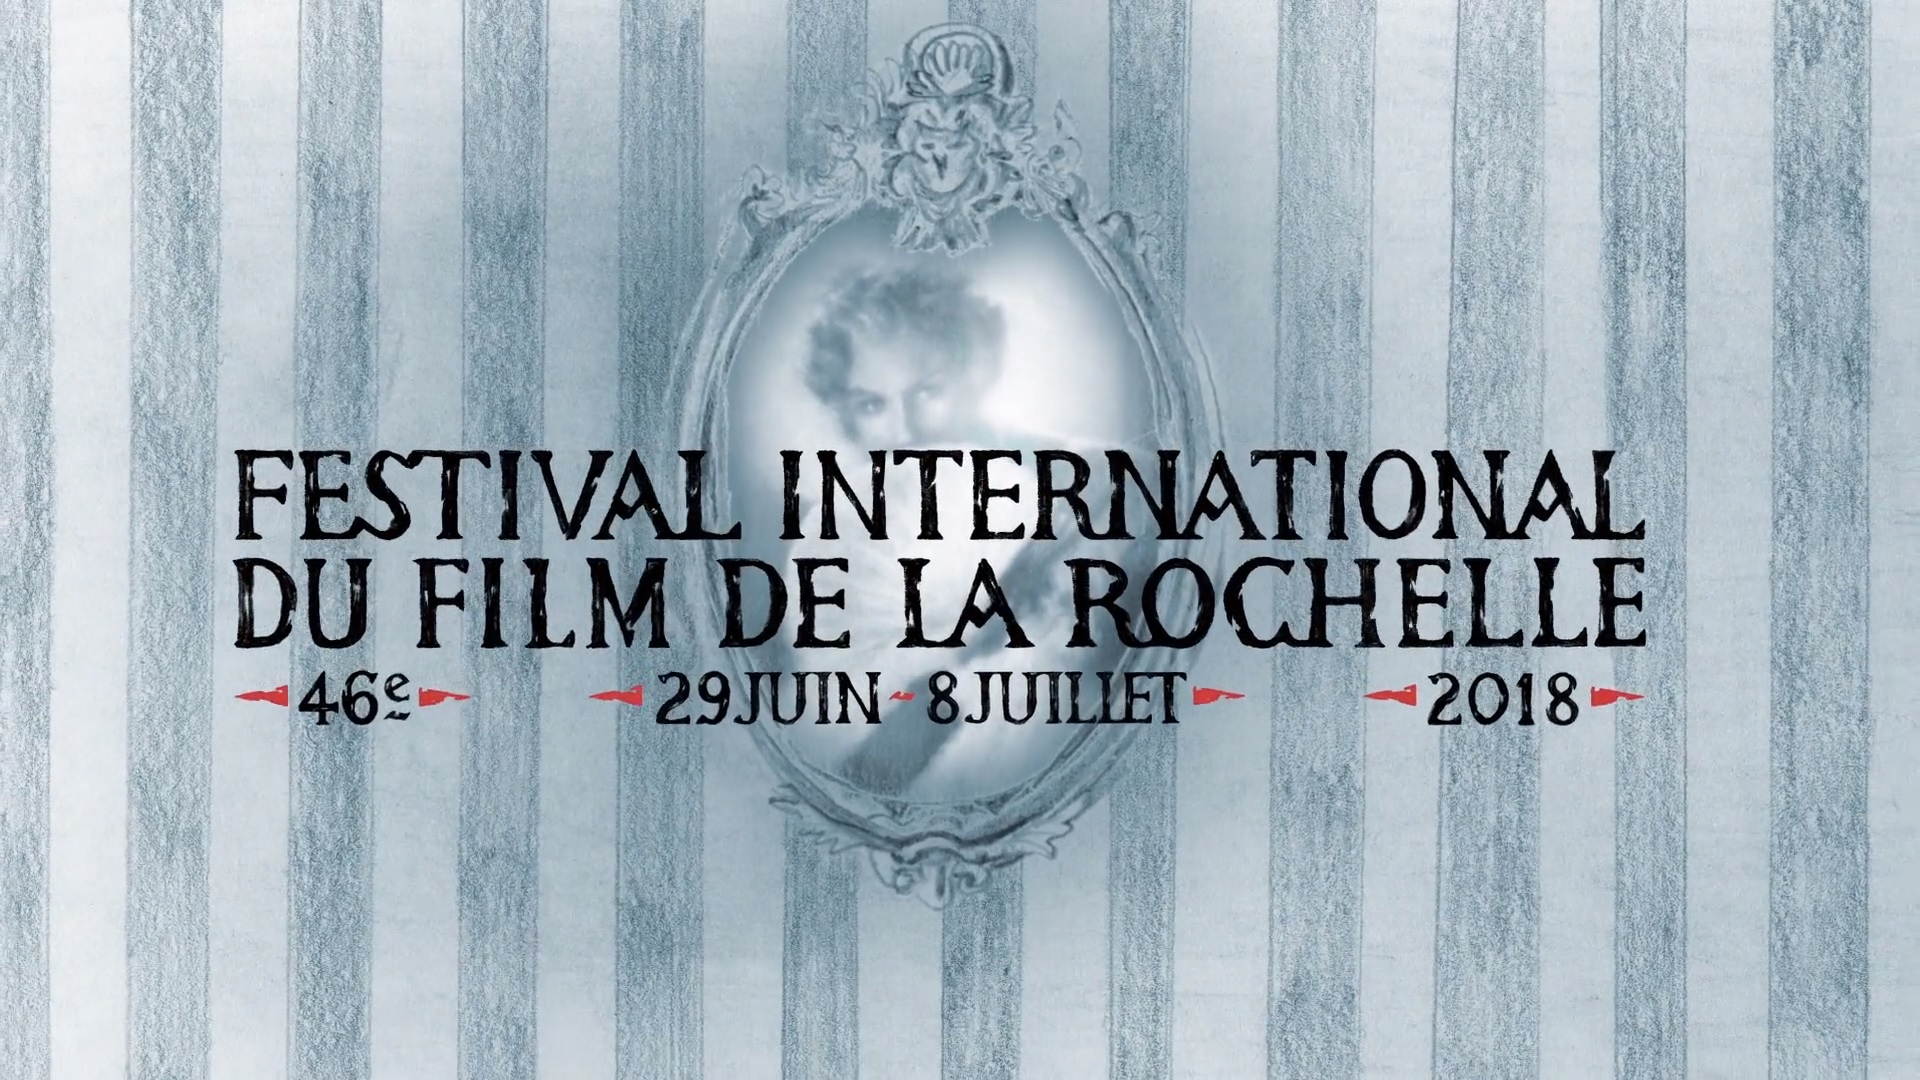 Festival international du film de La Rochelle 2018